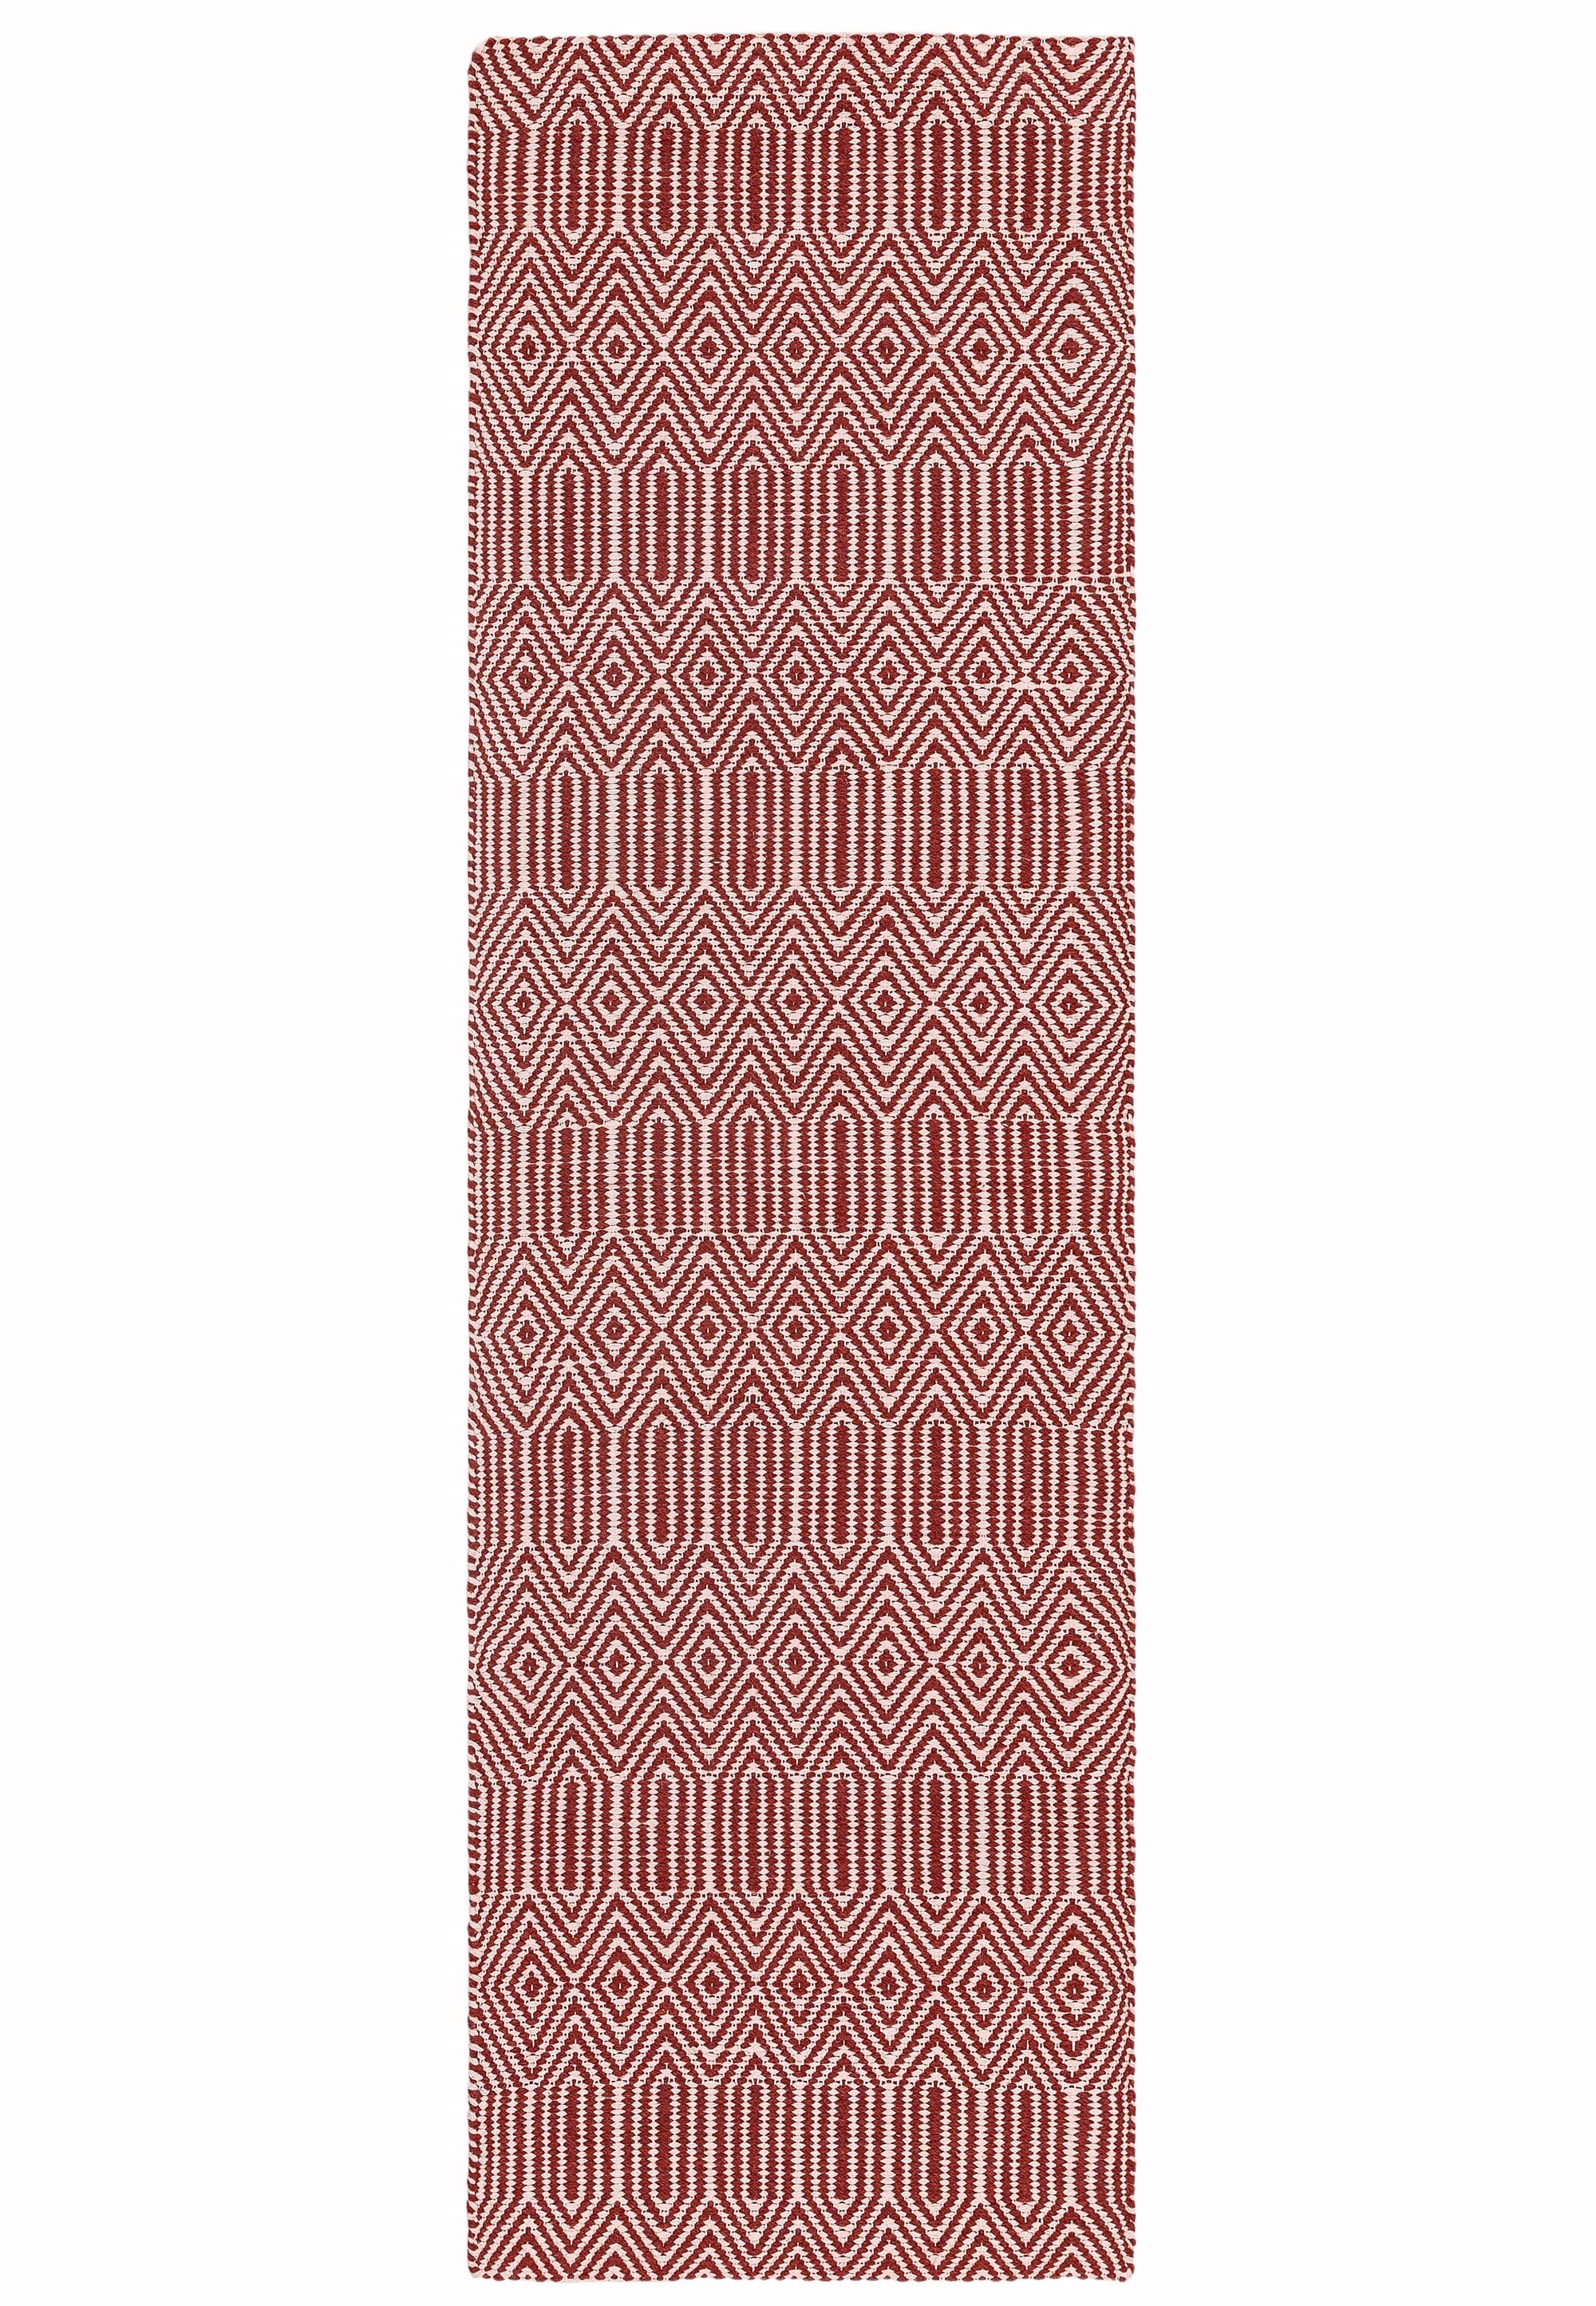 Sloan Marsala Ethnic Flatweave Rug